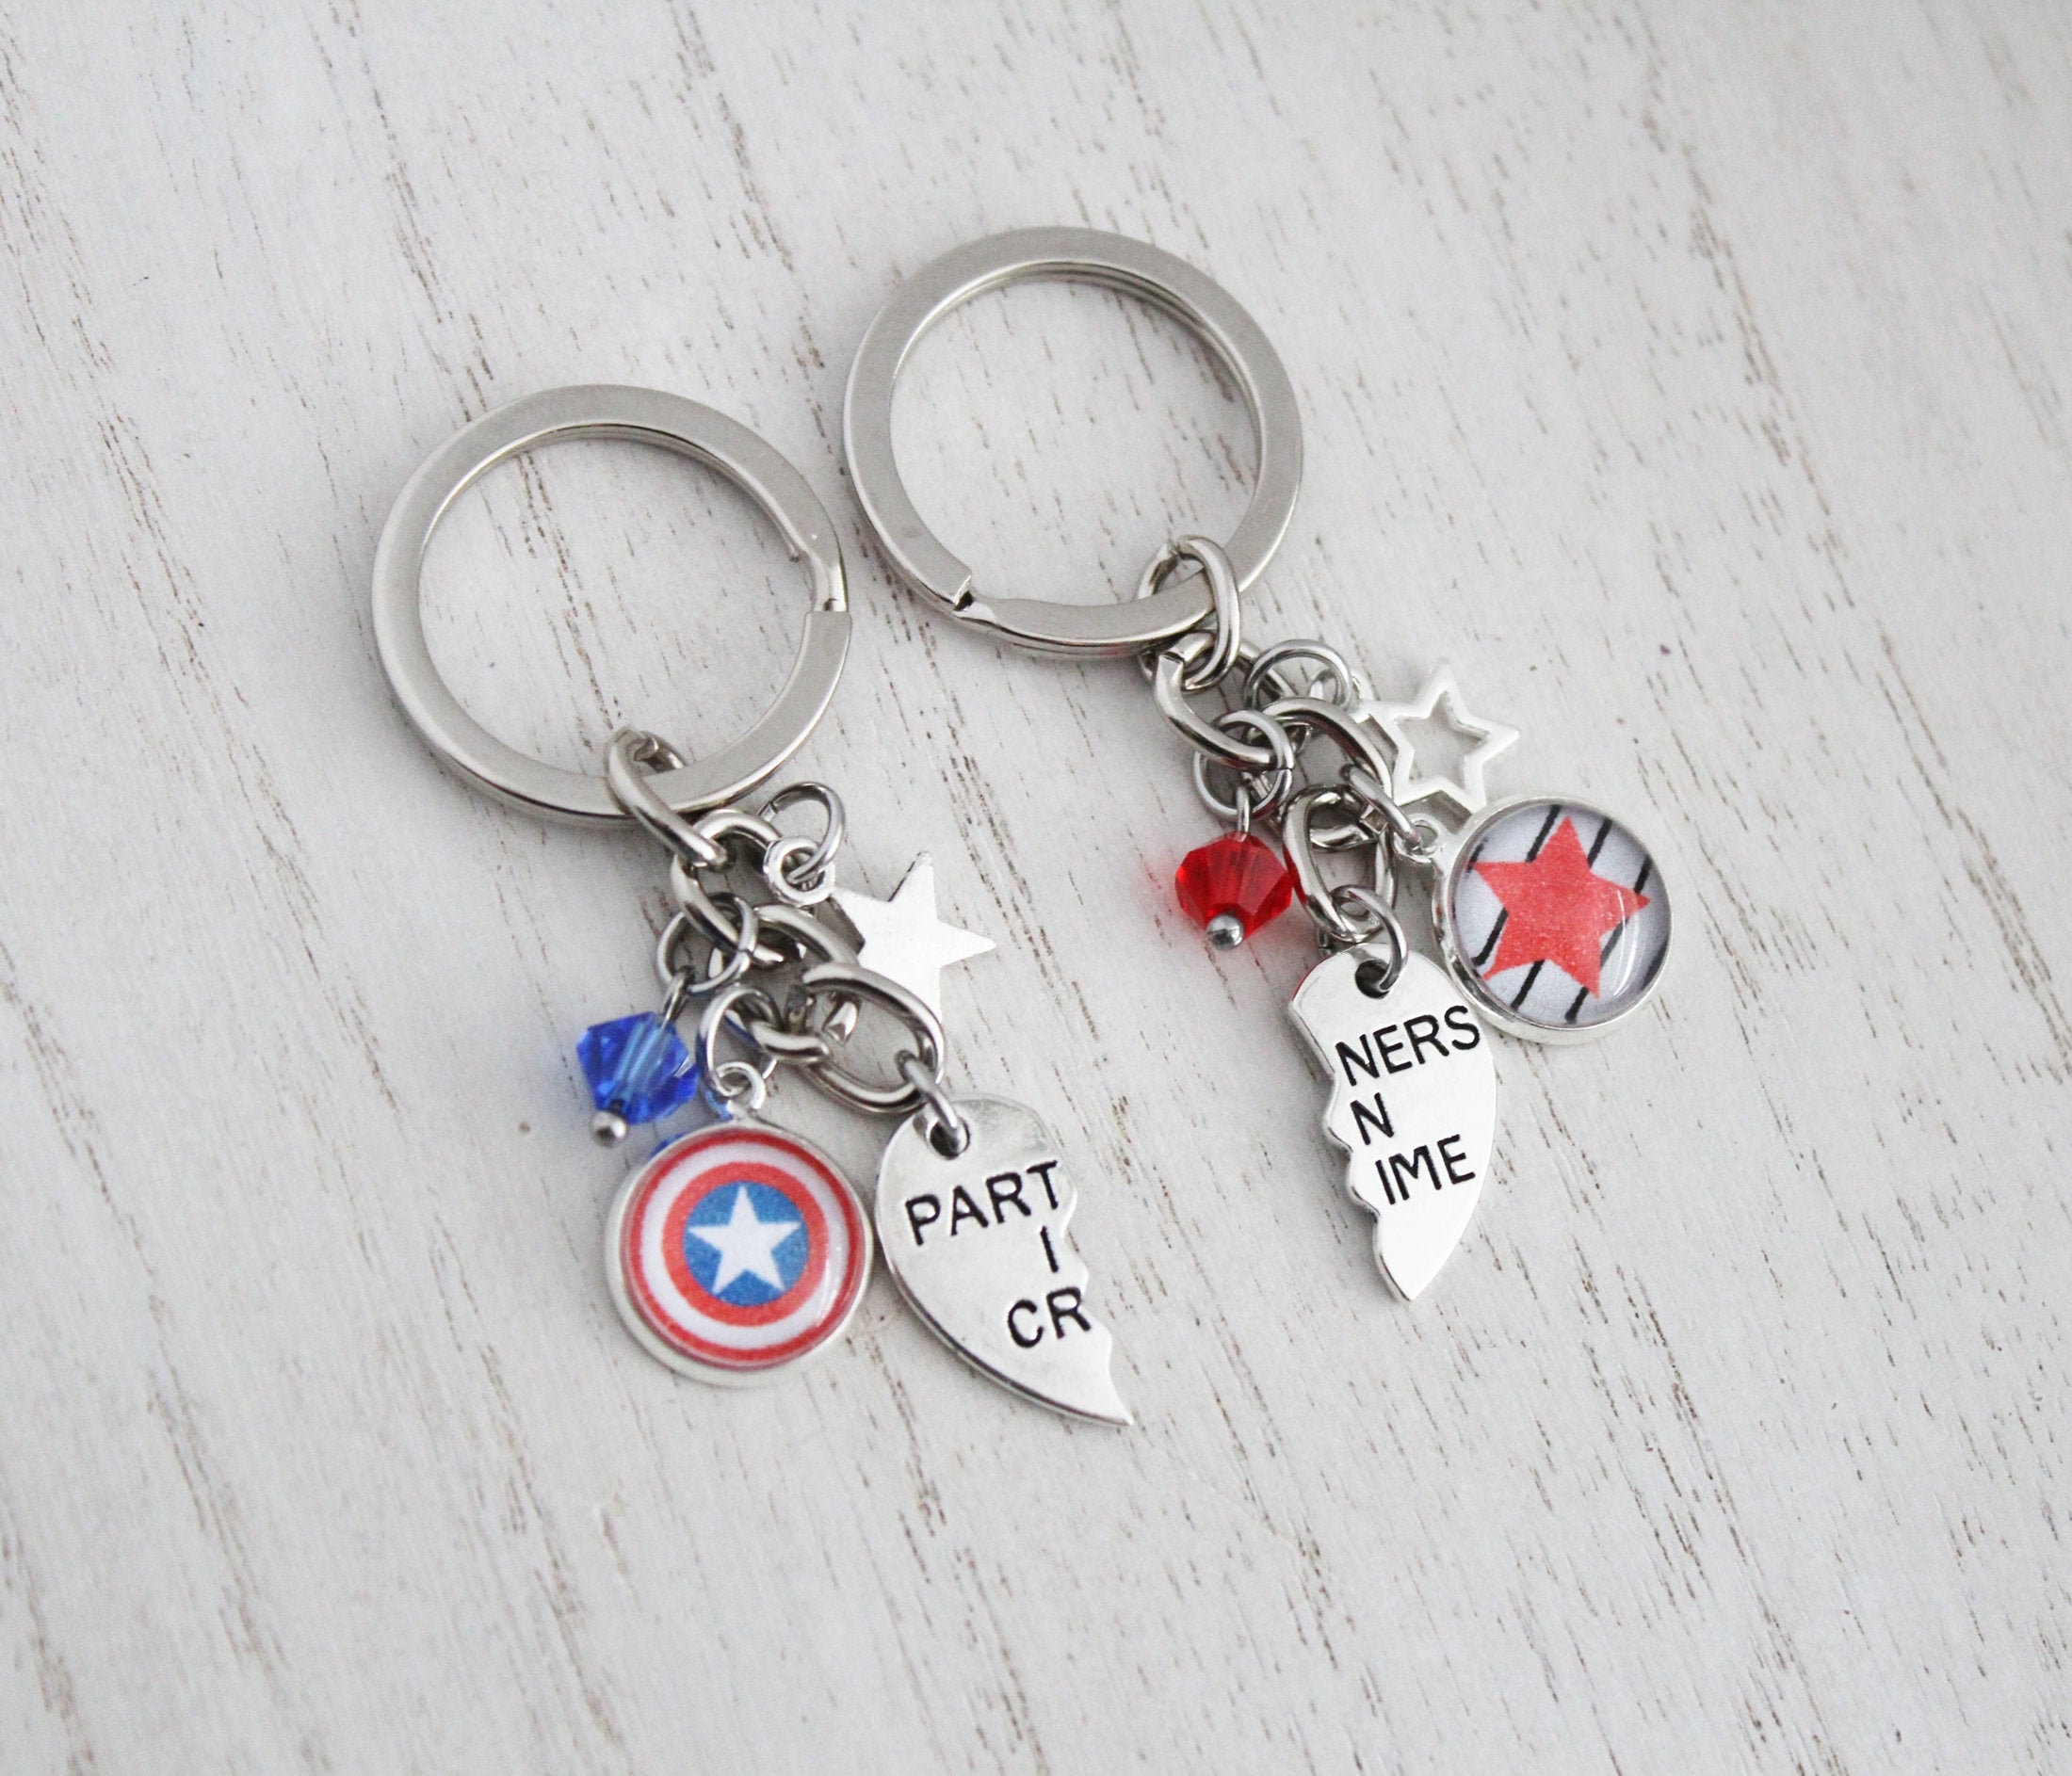 100 Safe Online Checkout Marvel Captain America Steve Winter Soider Bucky Stucky Loki Keychain